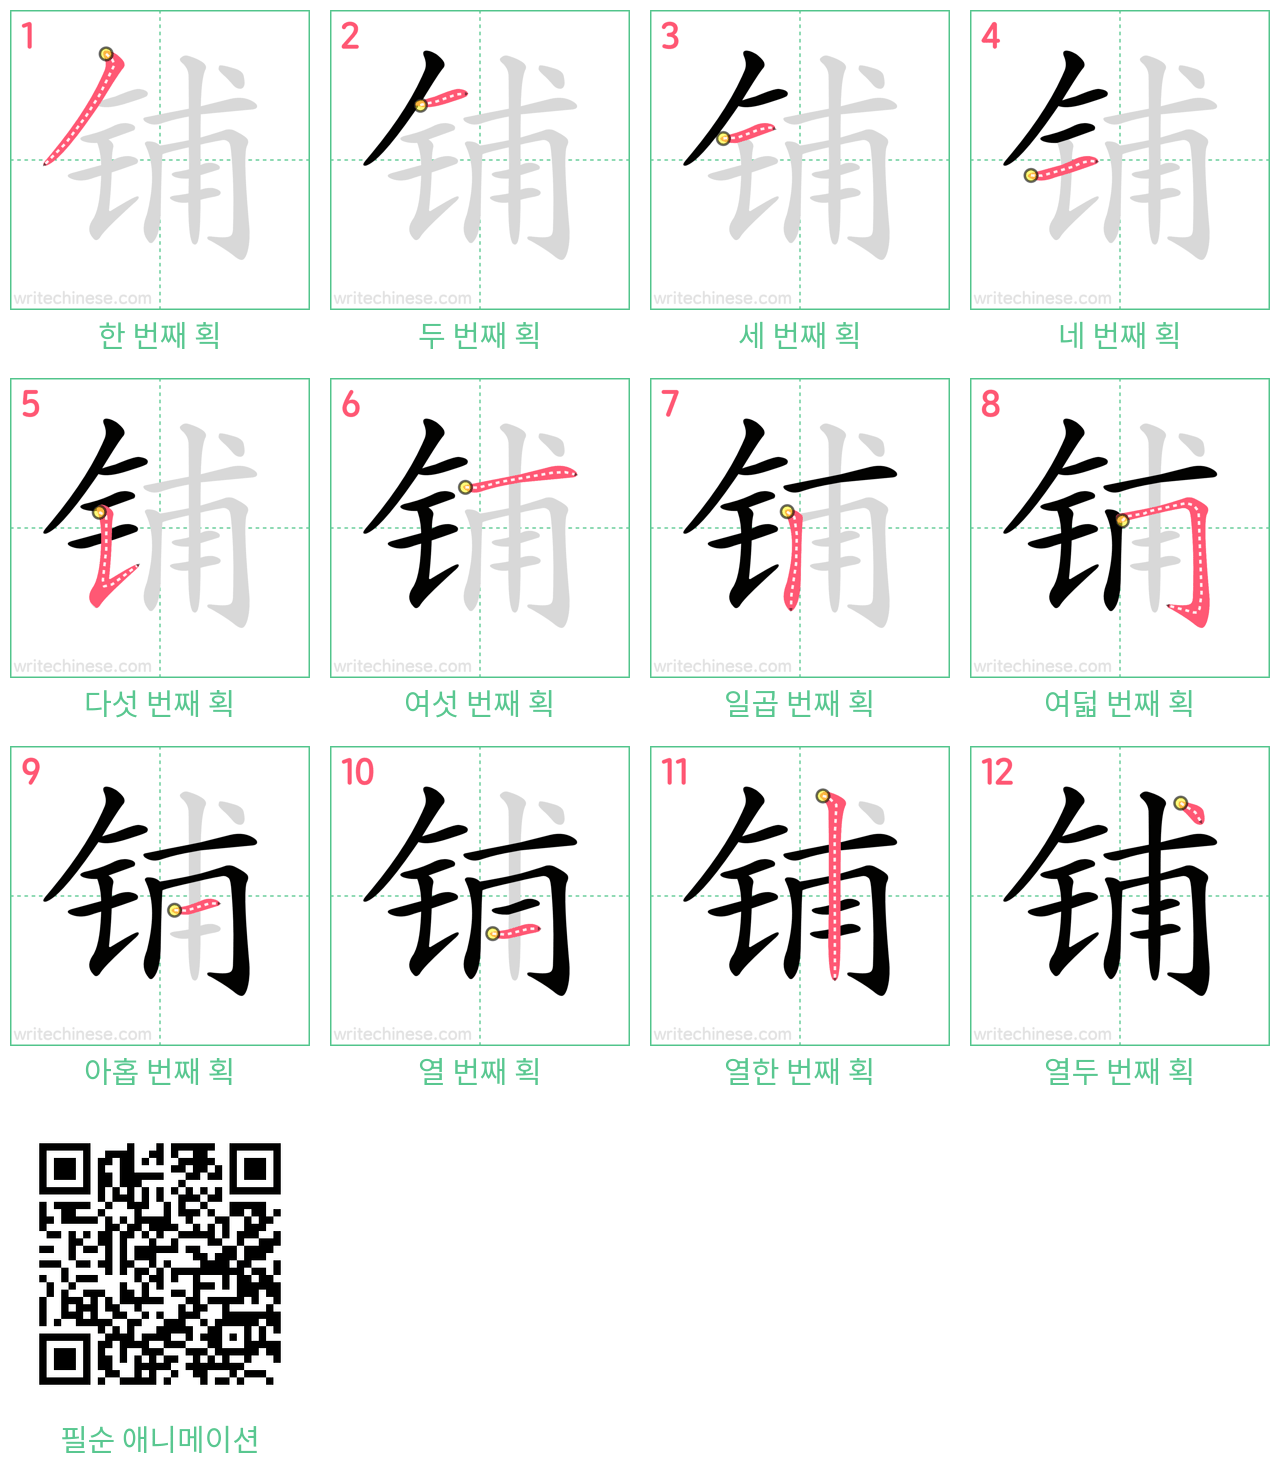 铺 step-by-step stroke order diagrams